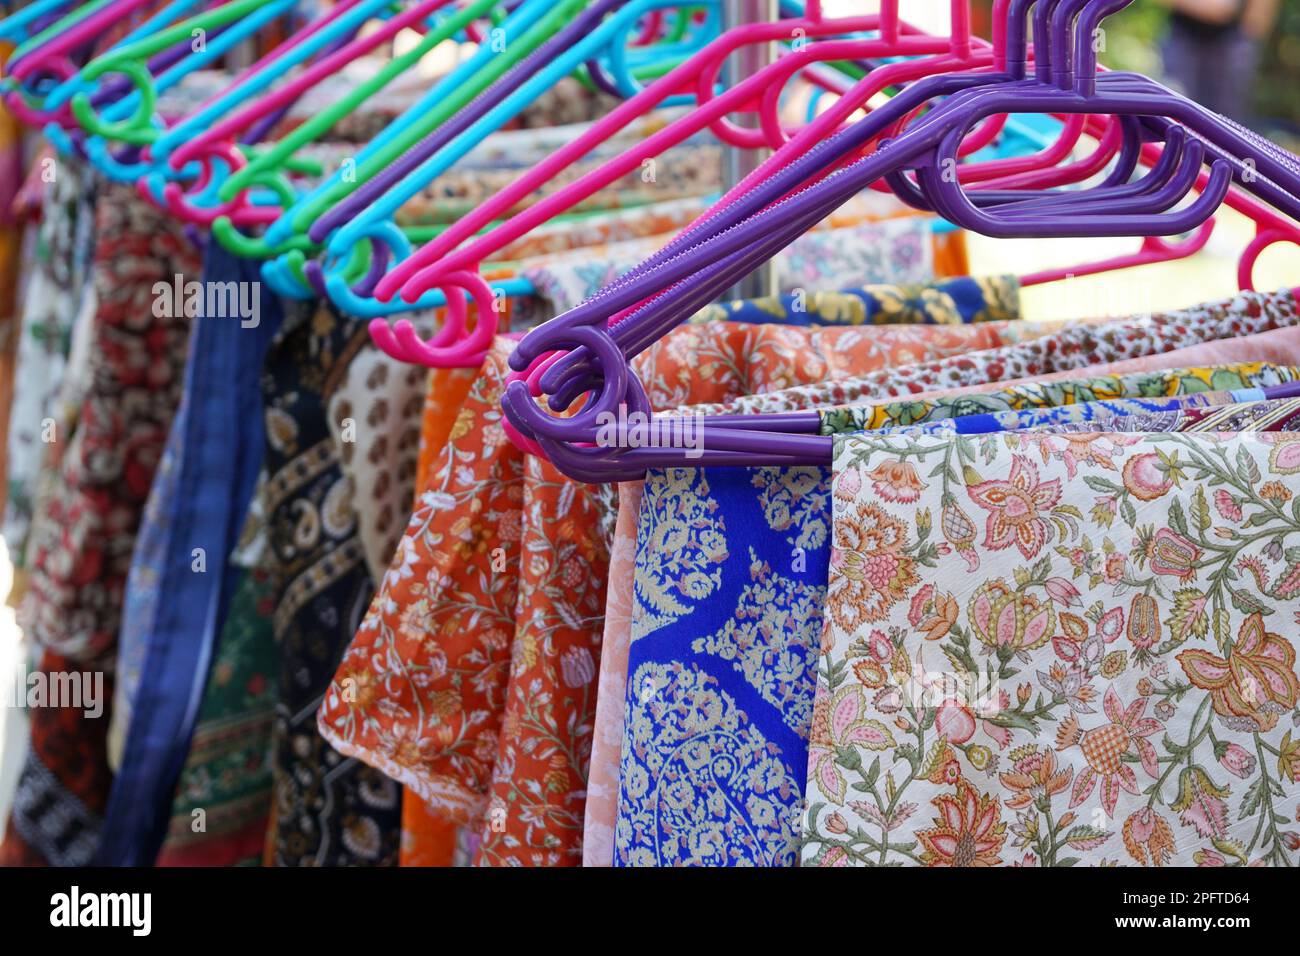 Porte manteau avec un motif floral de sélection sur les cintres des vêtements colorés Banque D'Images